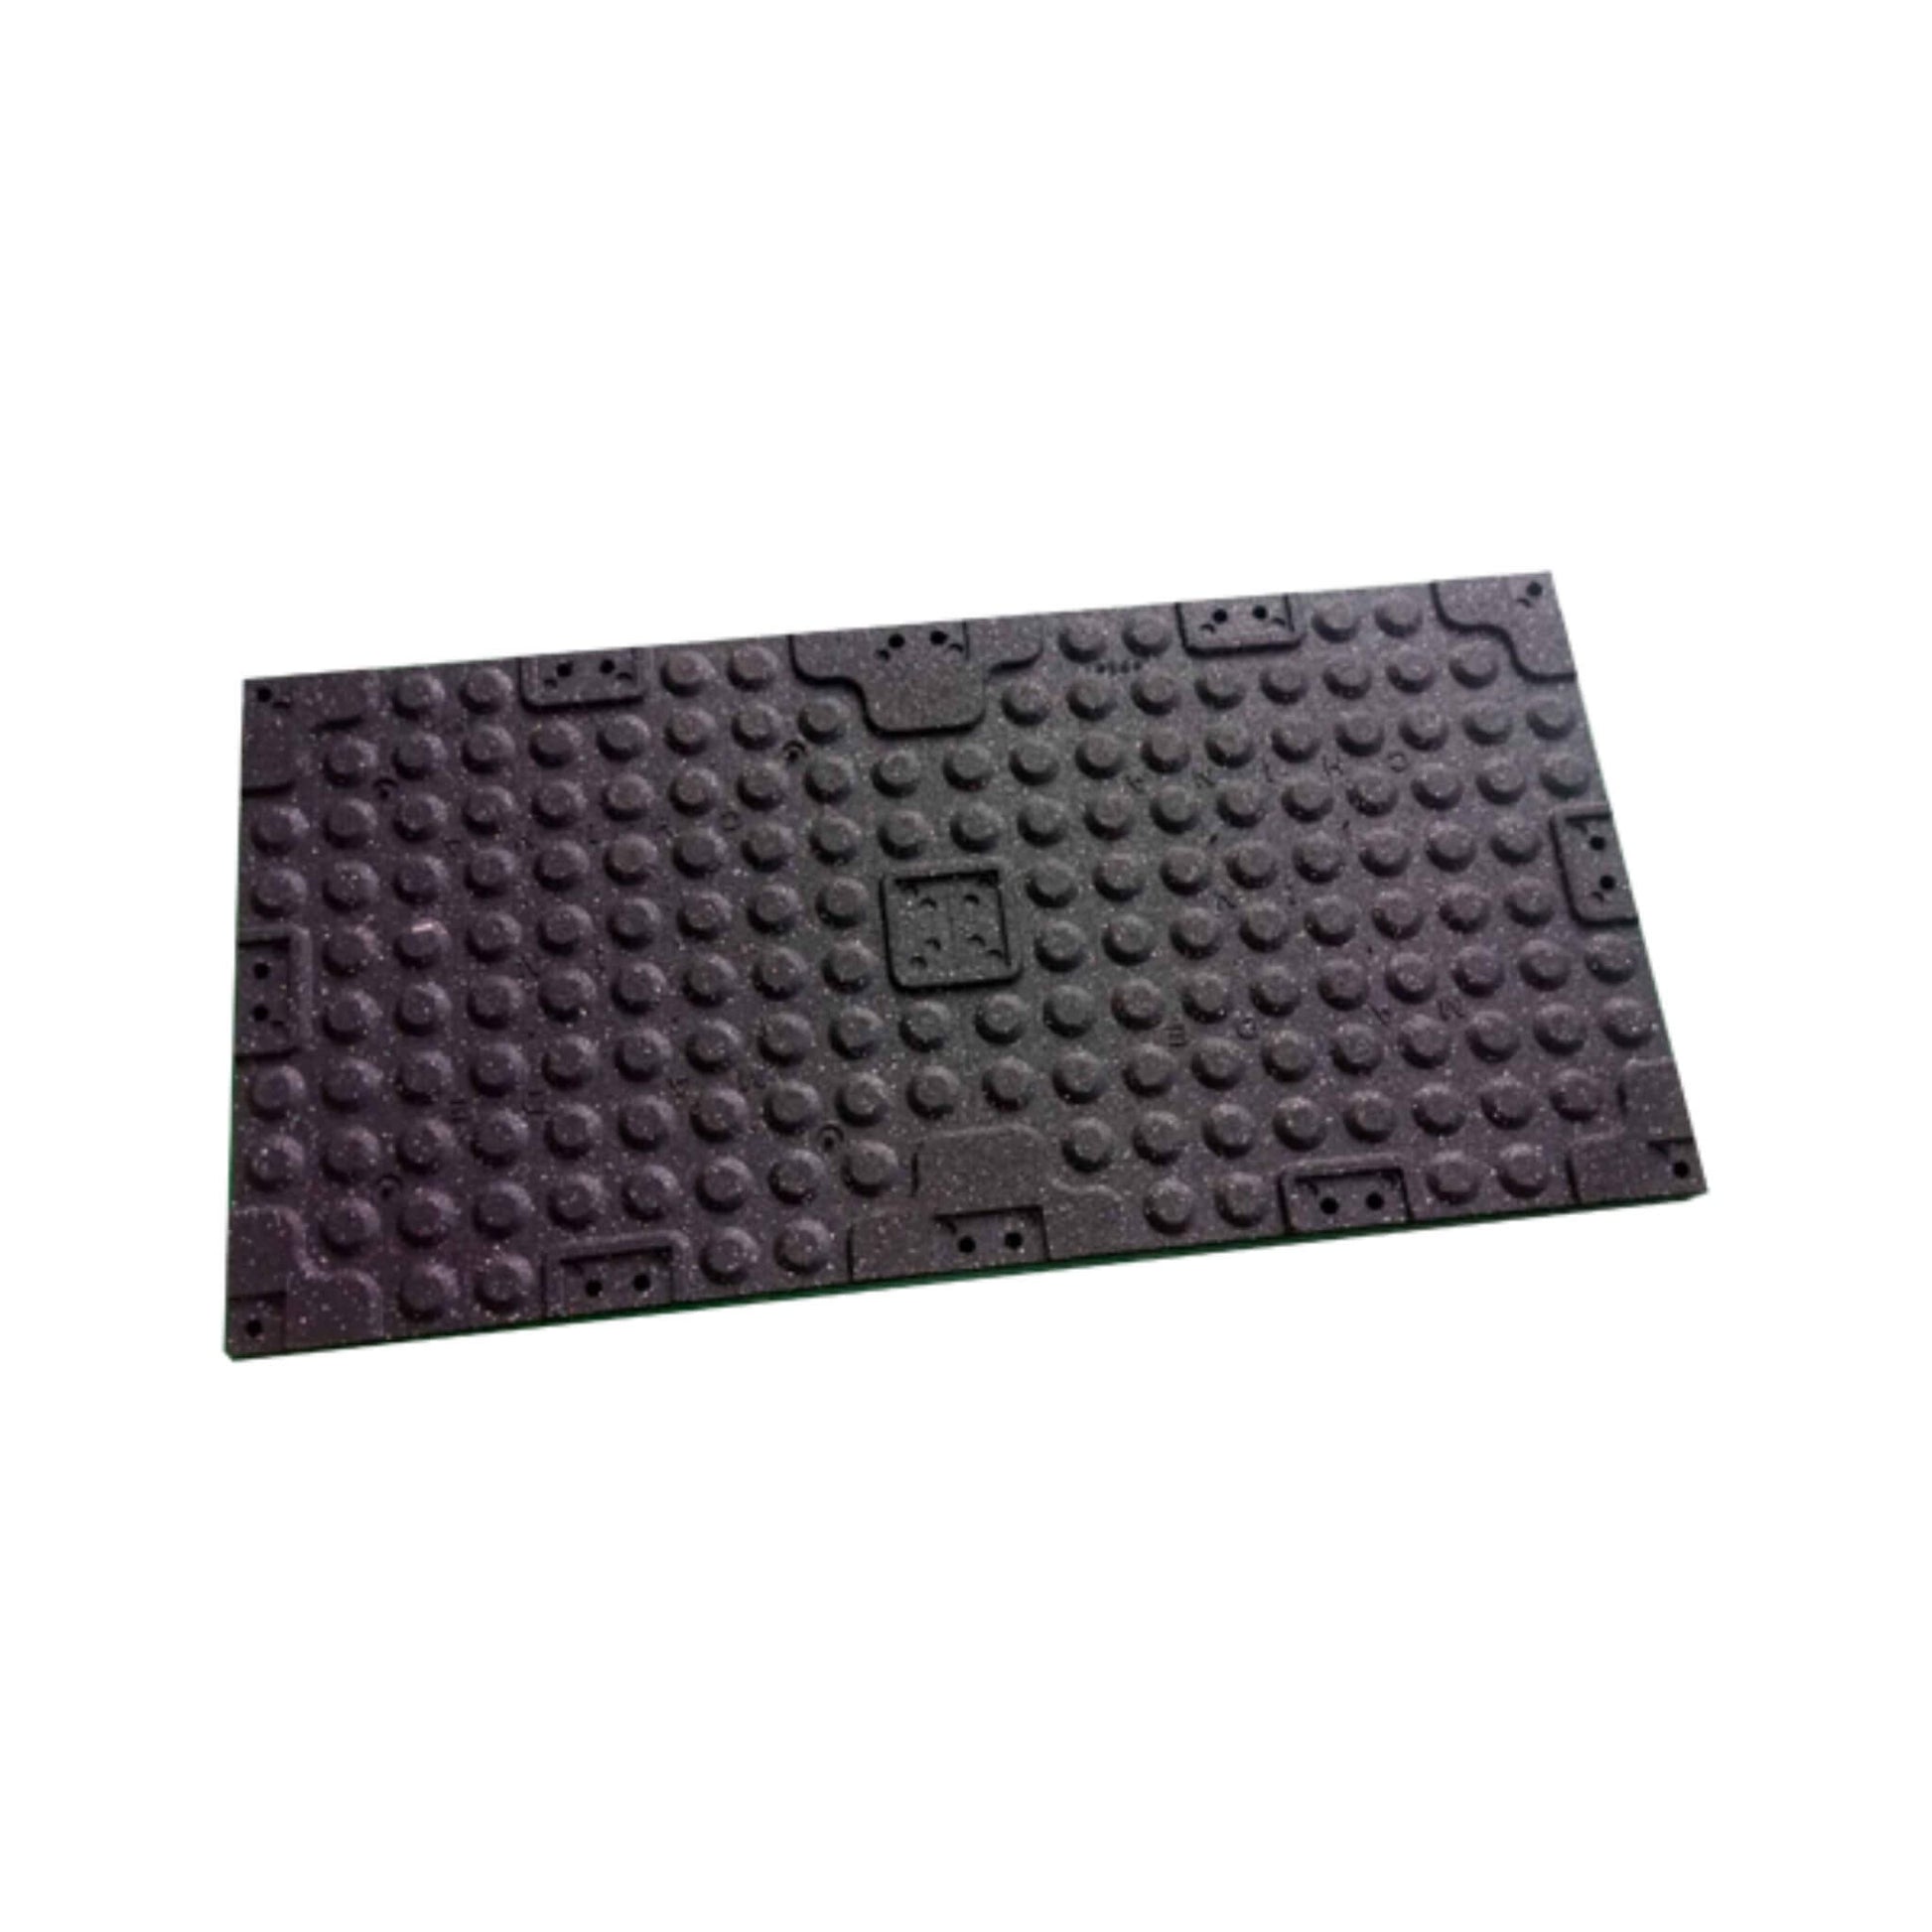 20mm Premium Black Rubber Gym Floor Tile (1m x 0.5m / Grey Fleck) grip